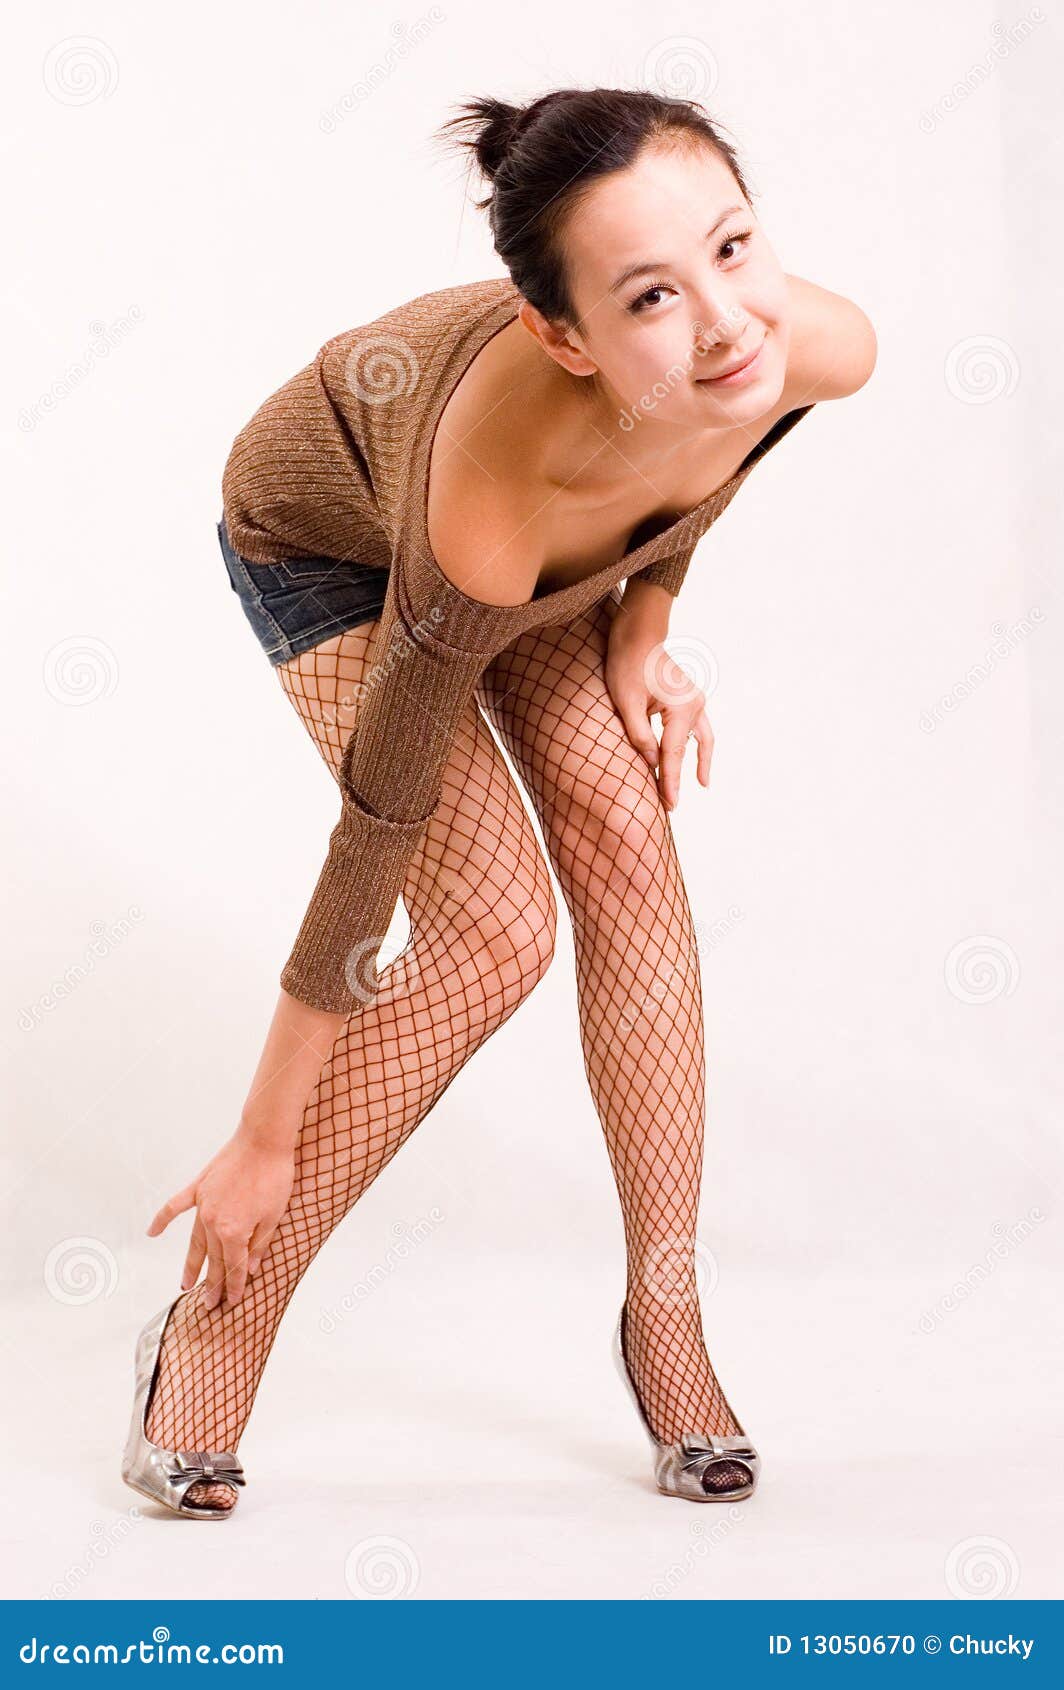 Asian Girls Stockings Models